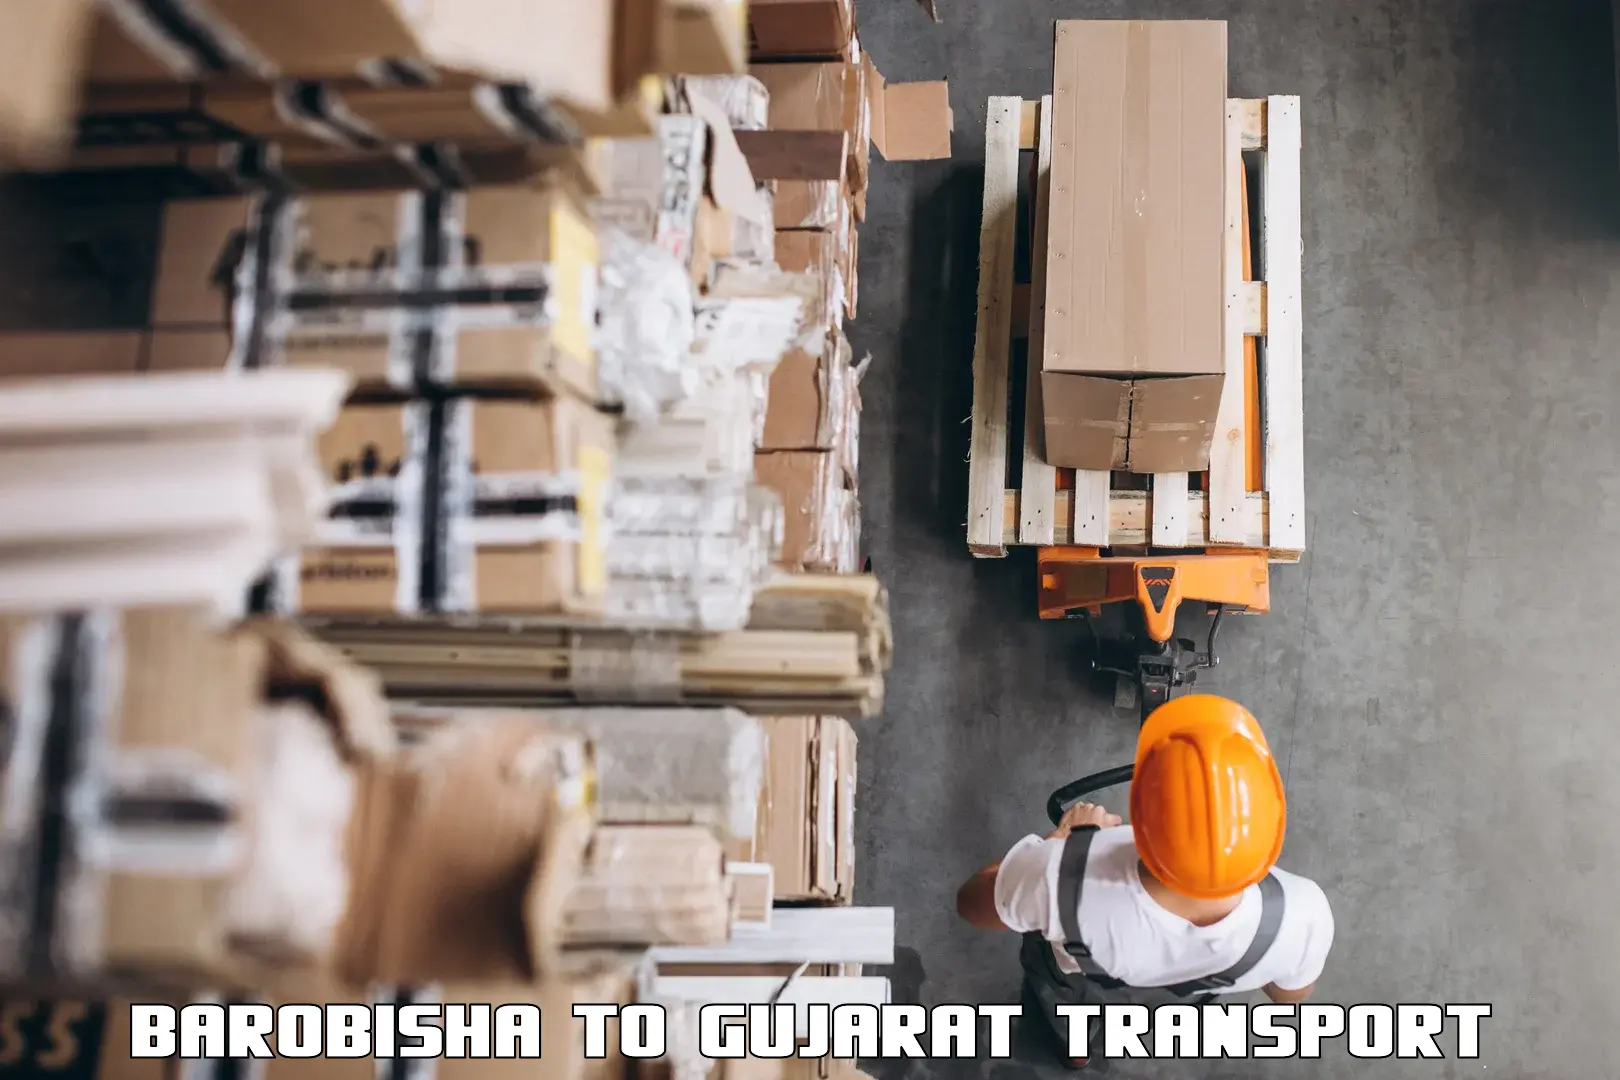 Furniture transport service Barobisha to Kandla Port